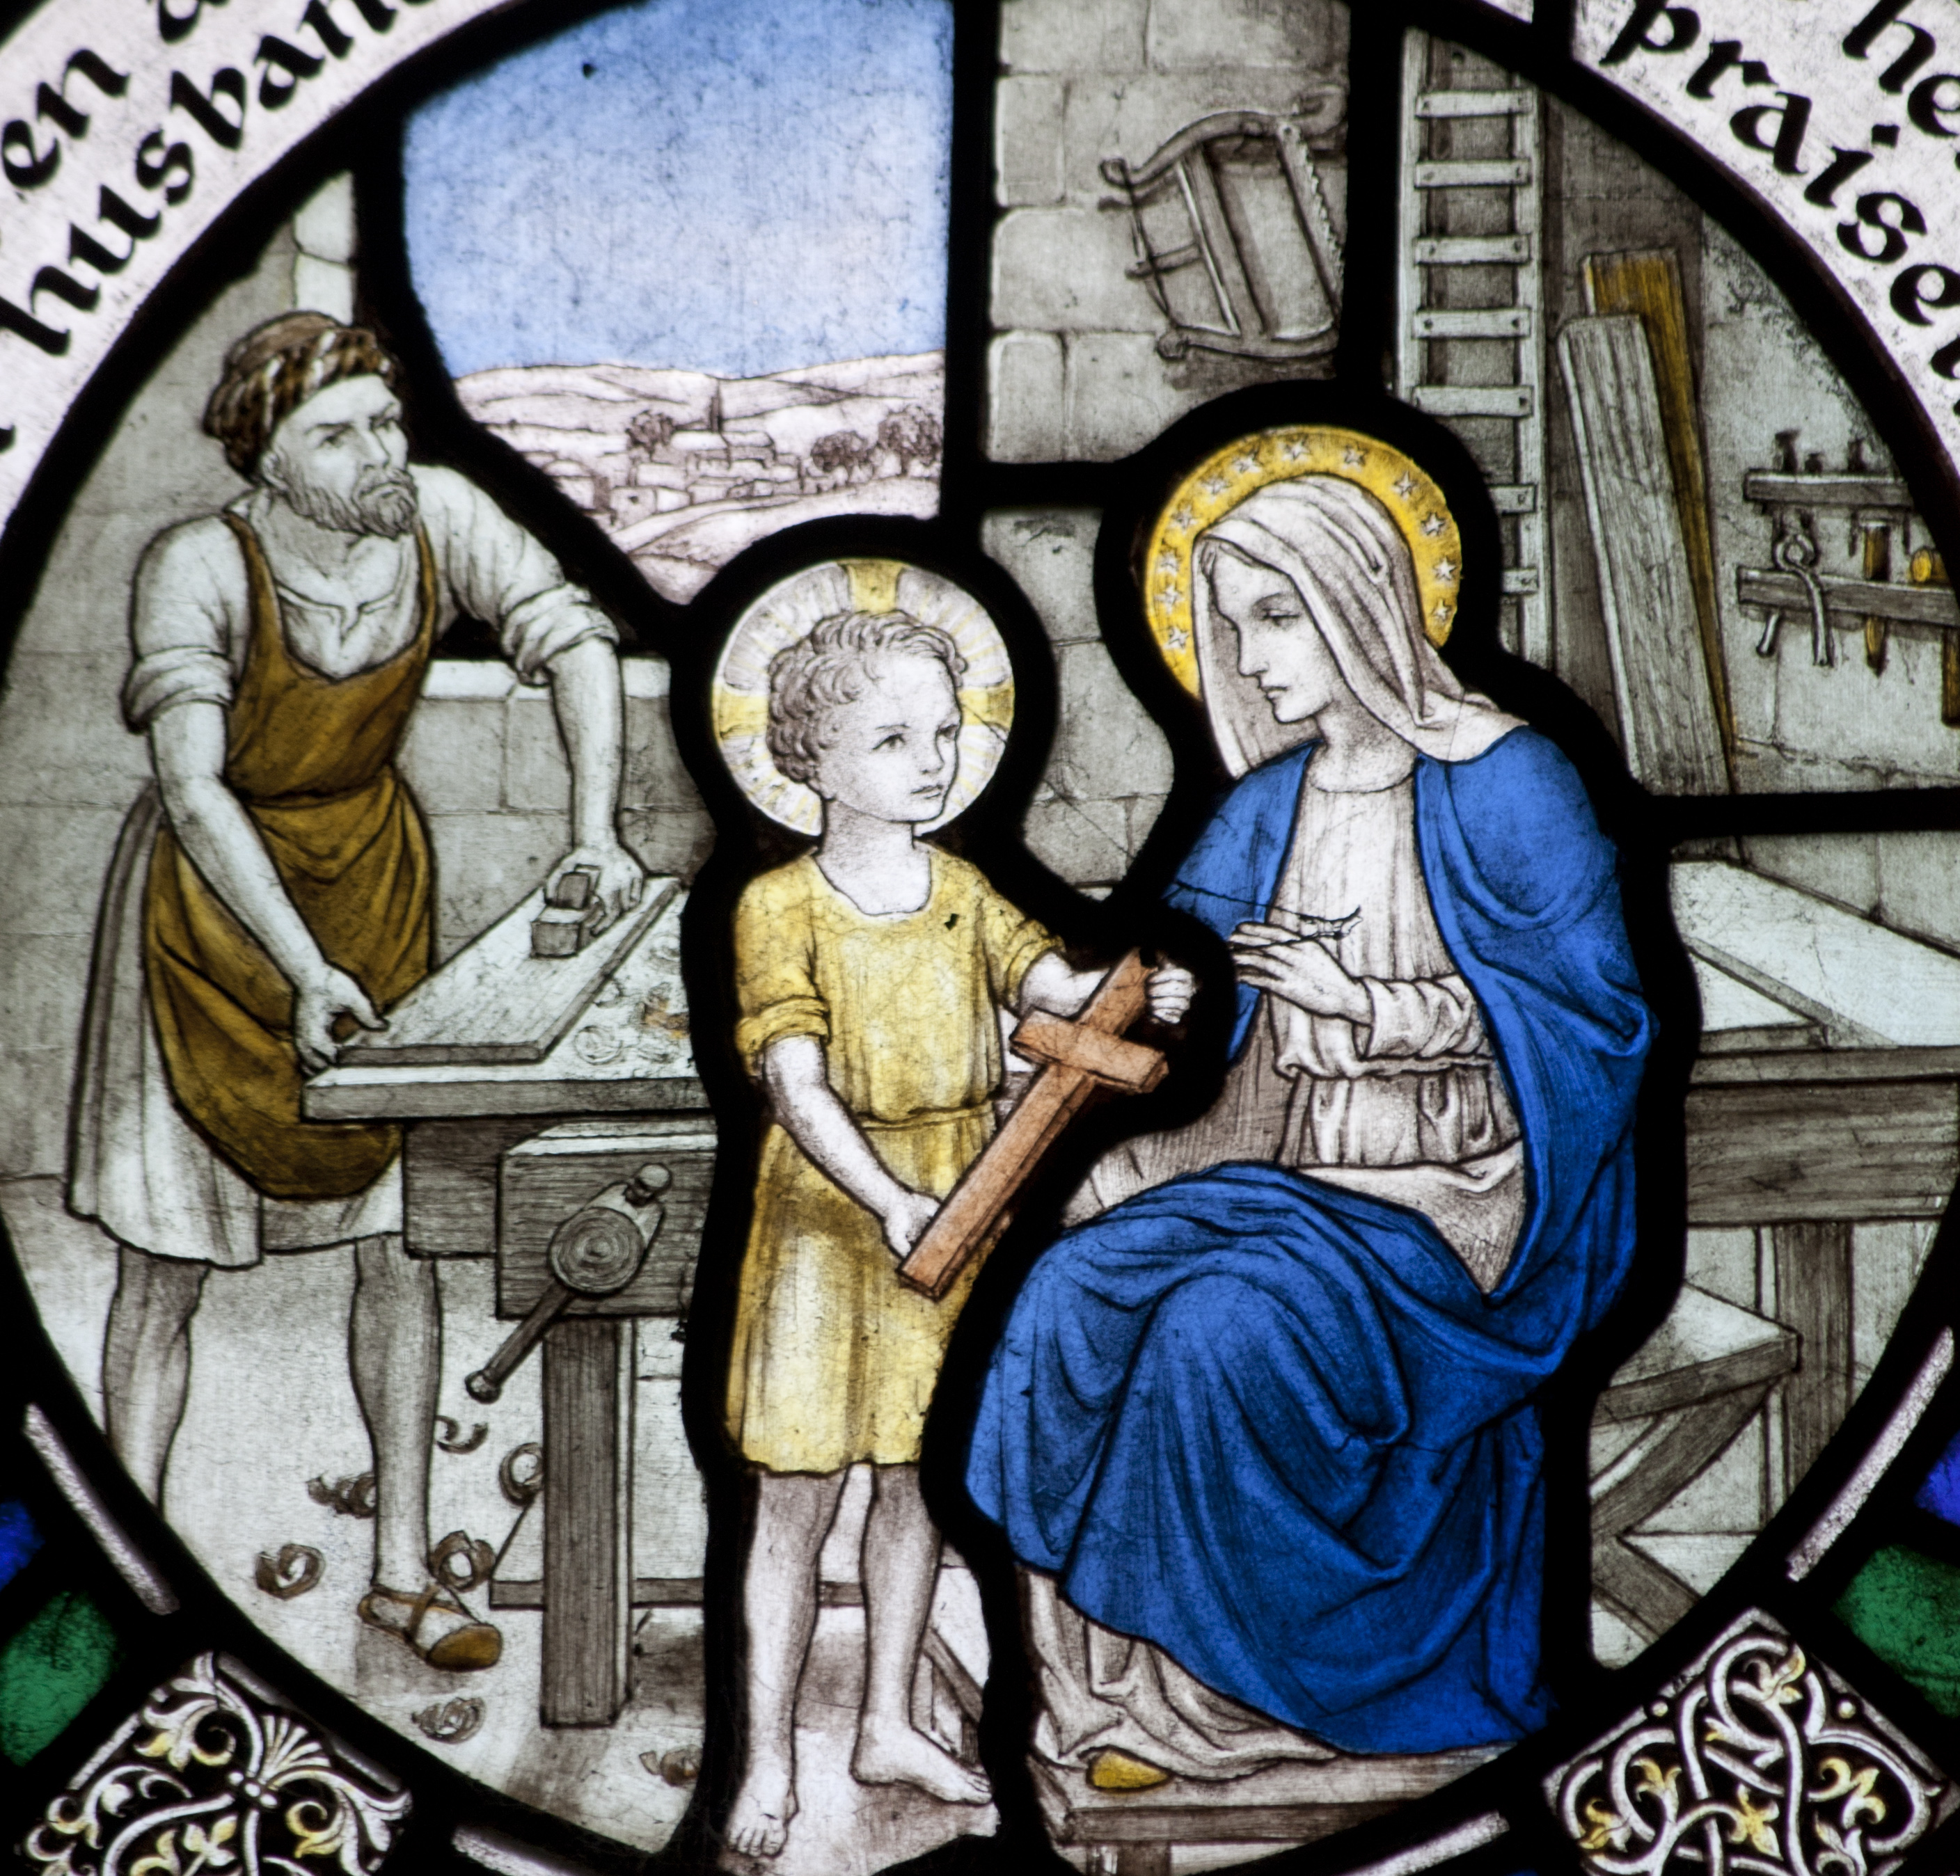 Sainte famille – St Aidan’s church in Bamburgh.